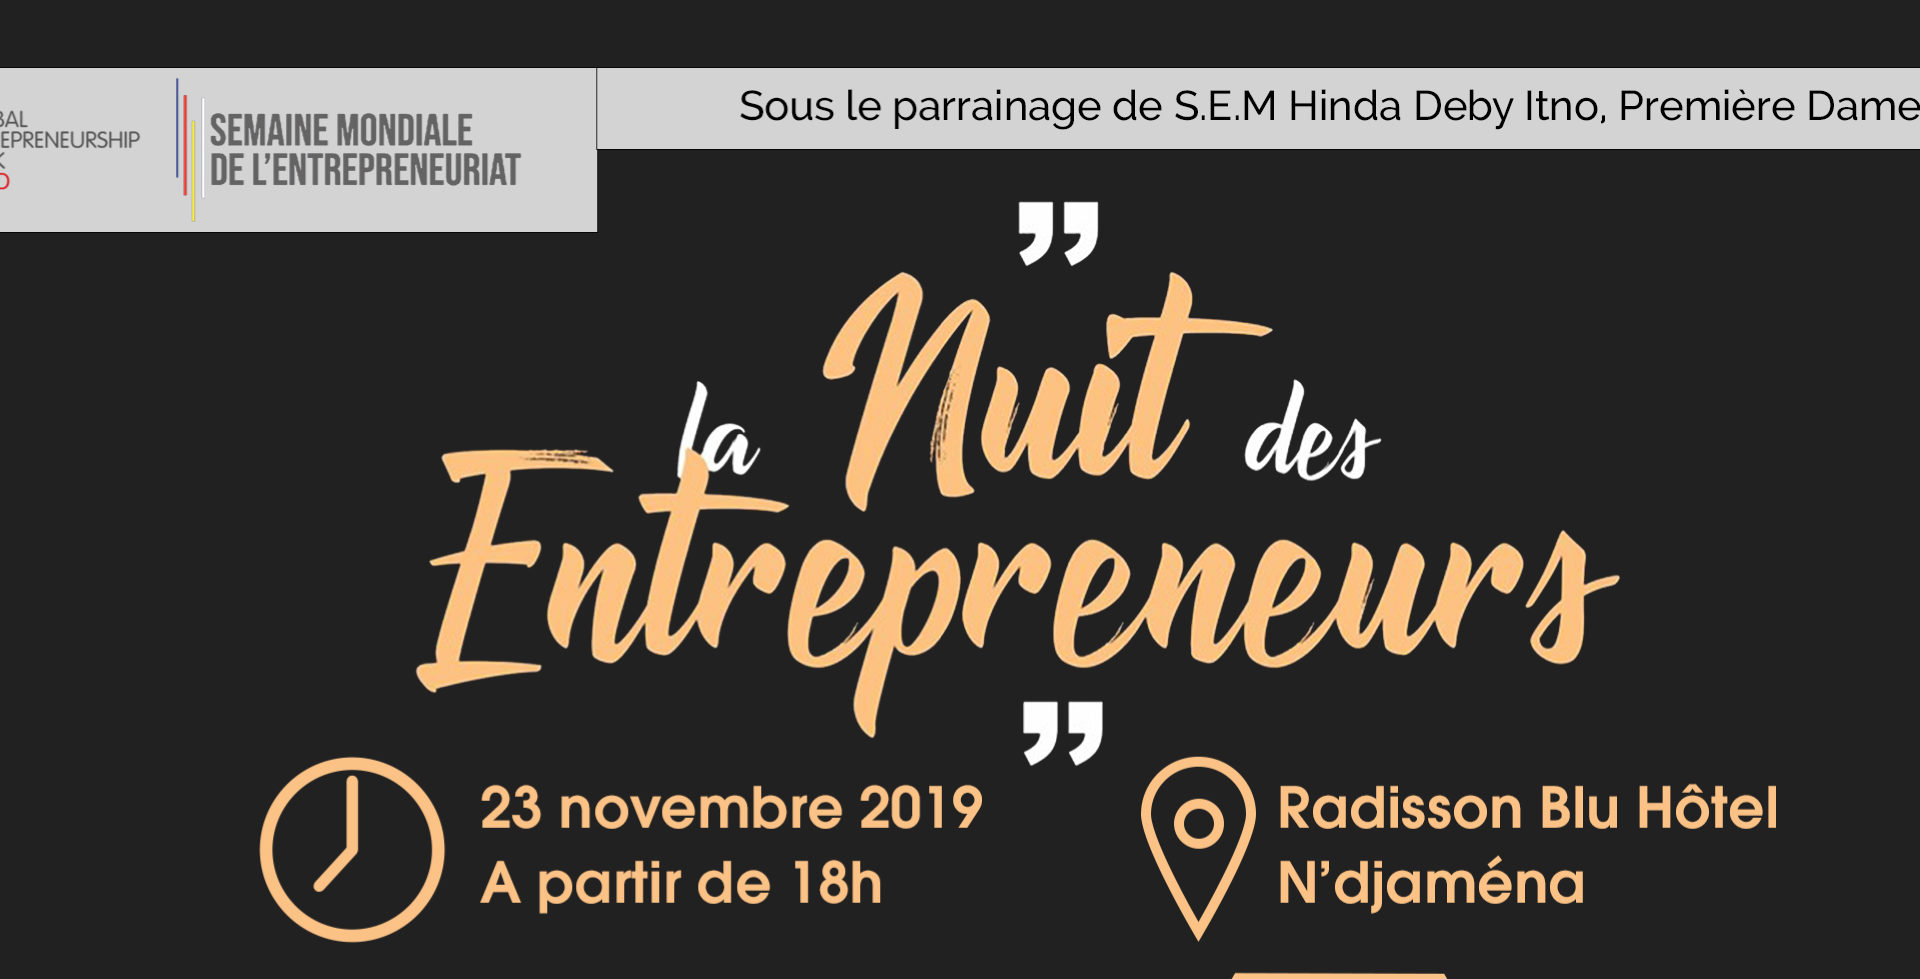 La nuit des entrepreneurs sera célébrée le 23 novembre 2019 1